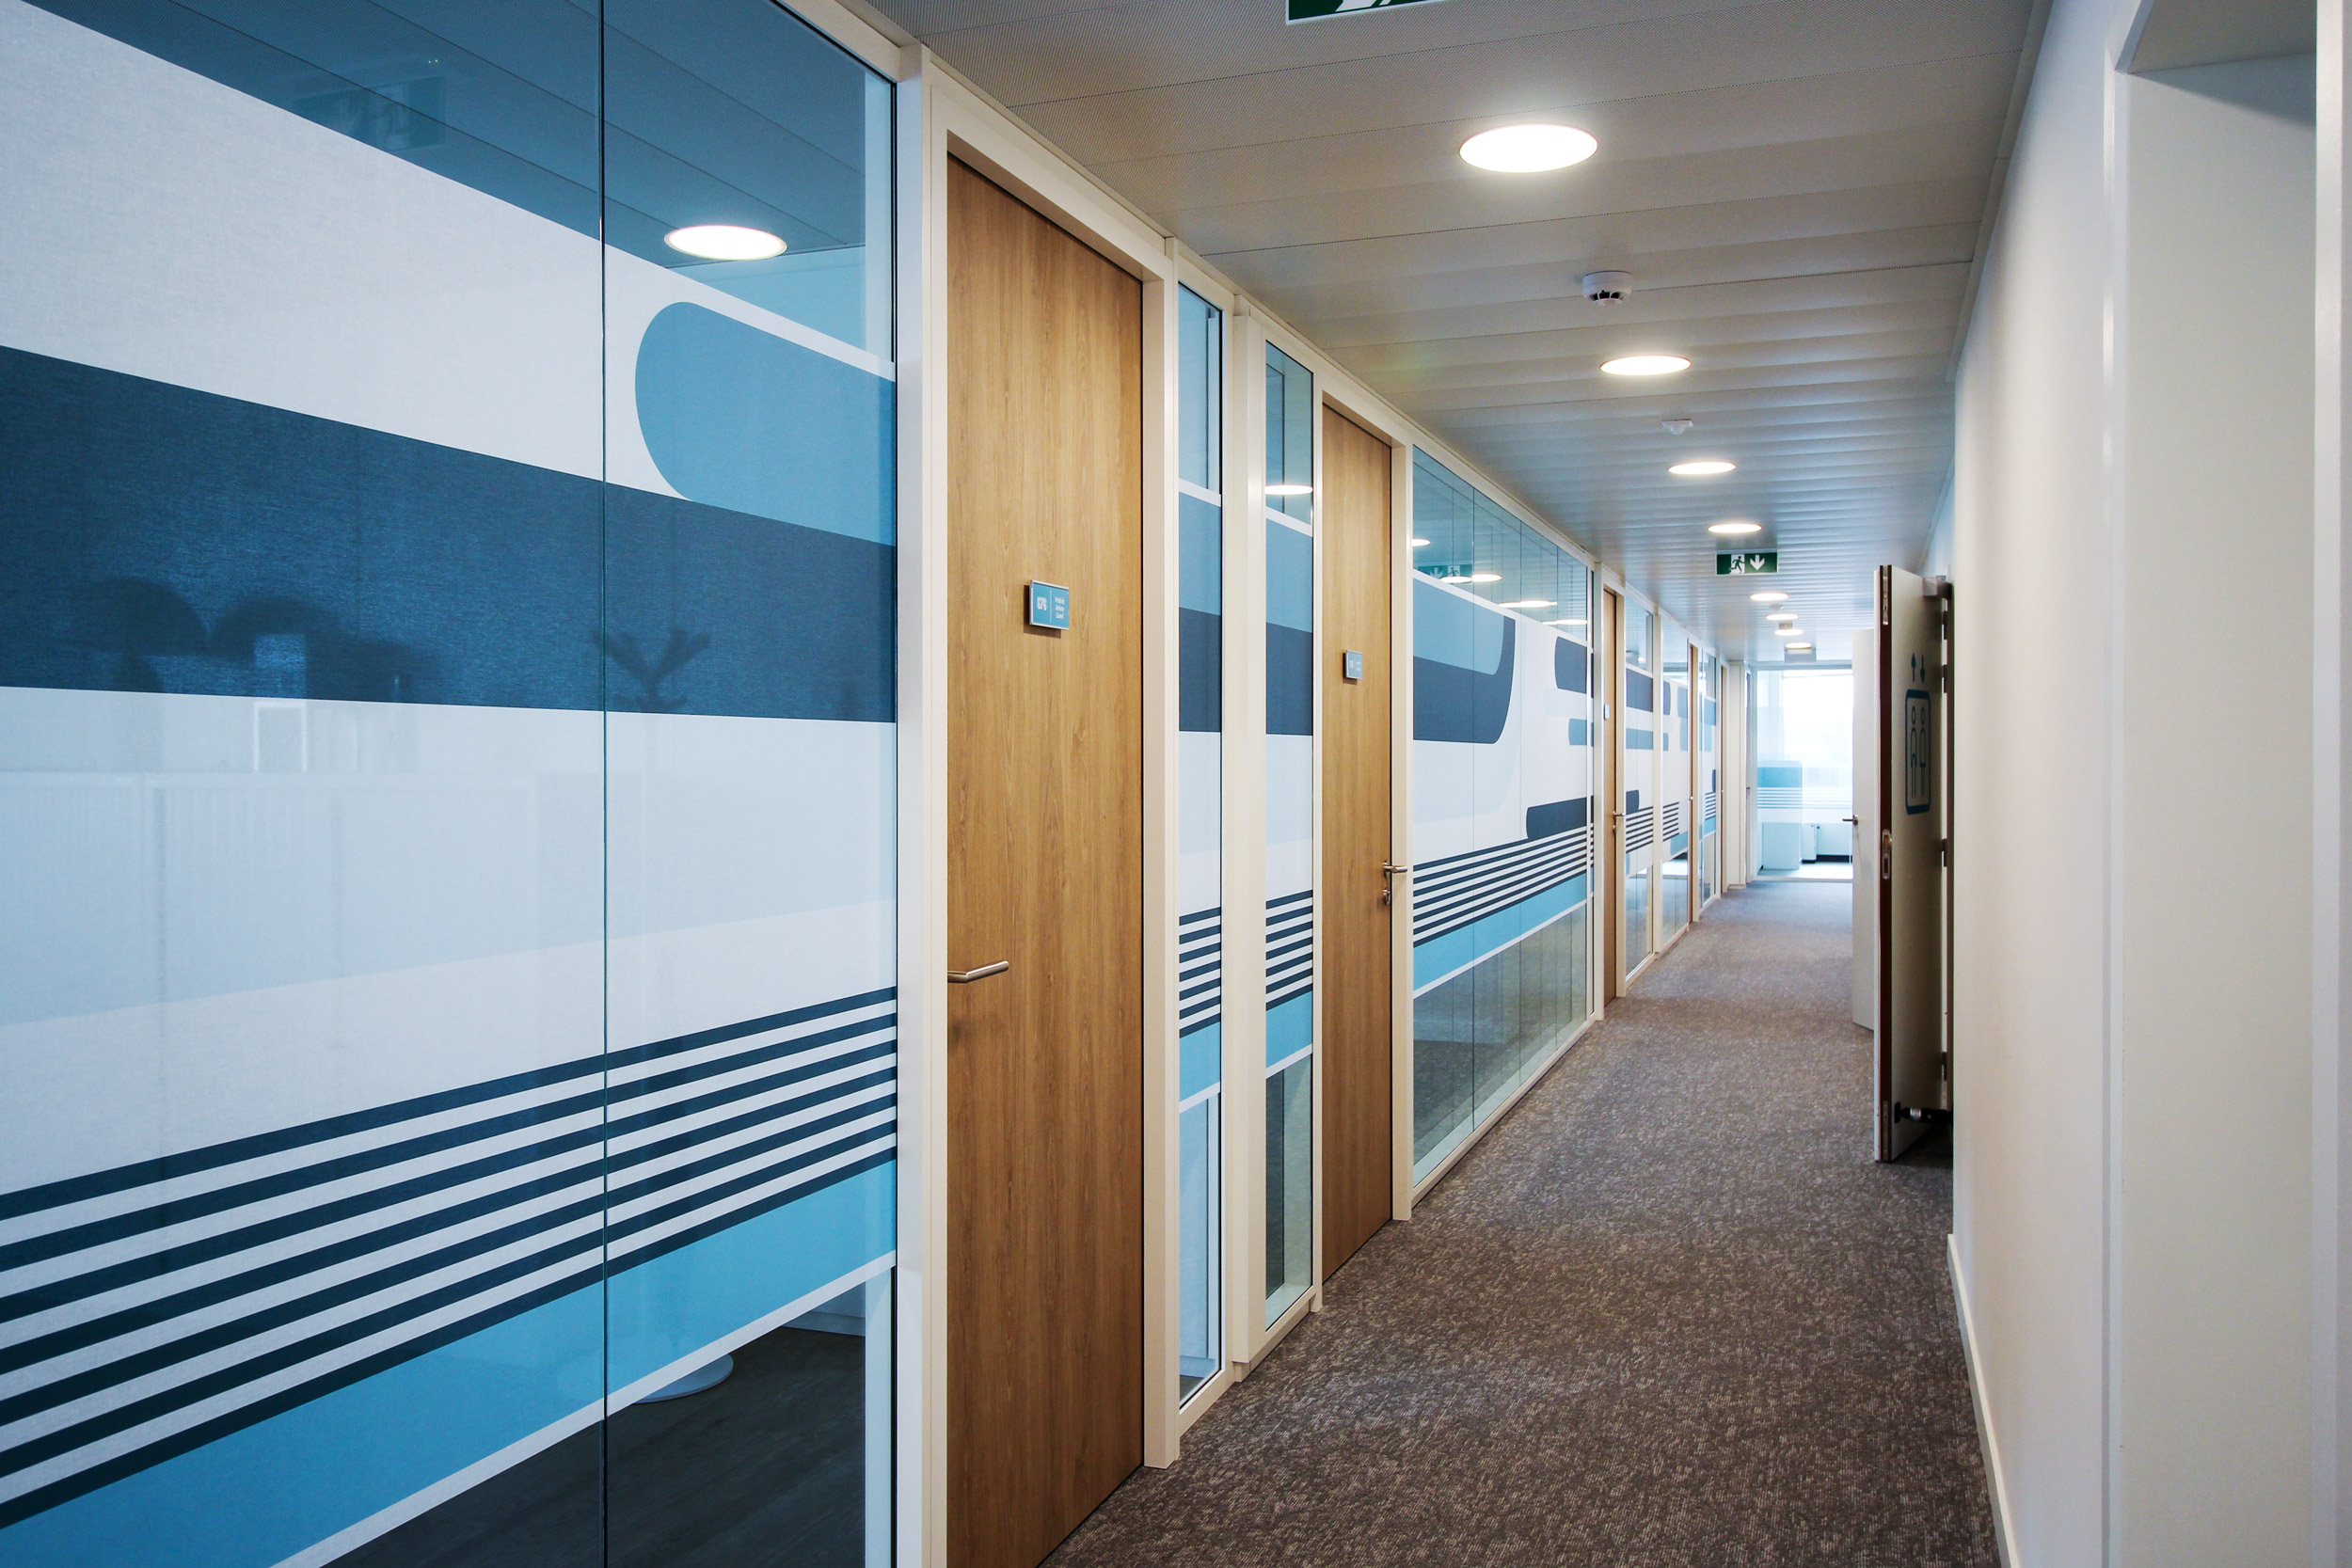 Vue d'ambiance d'un couloir avec plaques de port Skwizmi Marcal sur portes en bois et habillage décoratif sur cloisons vitrées en tissus autocollant design (Twodesigners) des bandes dans les tons de bleu